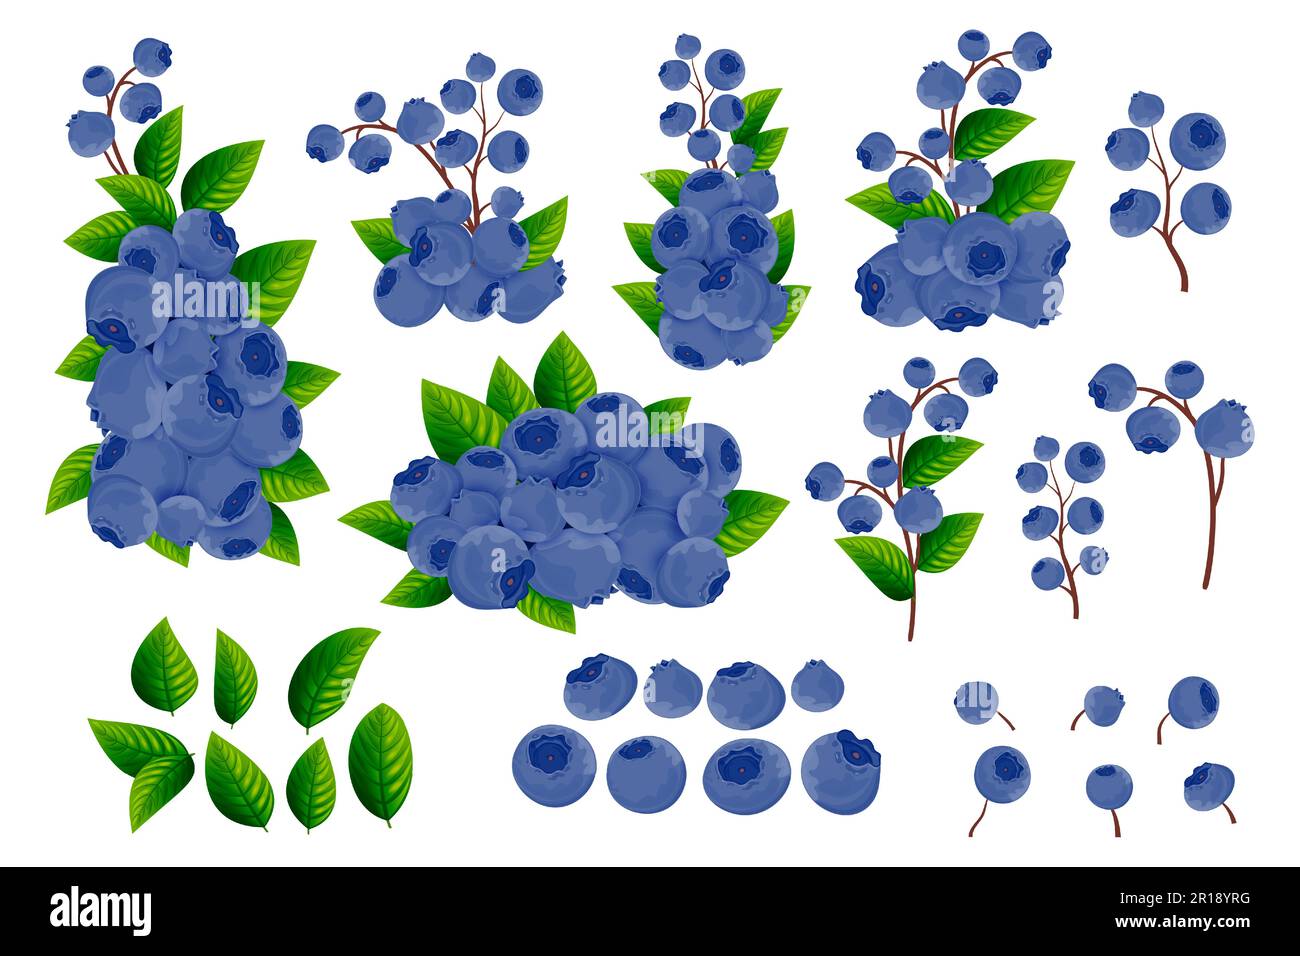 Un insieme di rami, bacche blu scuro e foglie verdi di mirtilli su sfondo bianco. Bordi decorativi da frutti e bacche. Modello Berry. Illustrazione Vettoriale